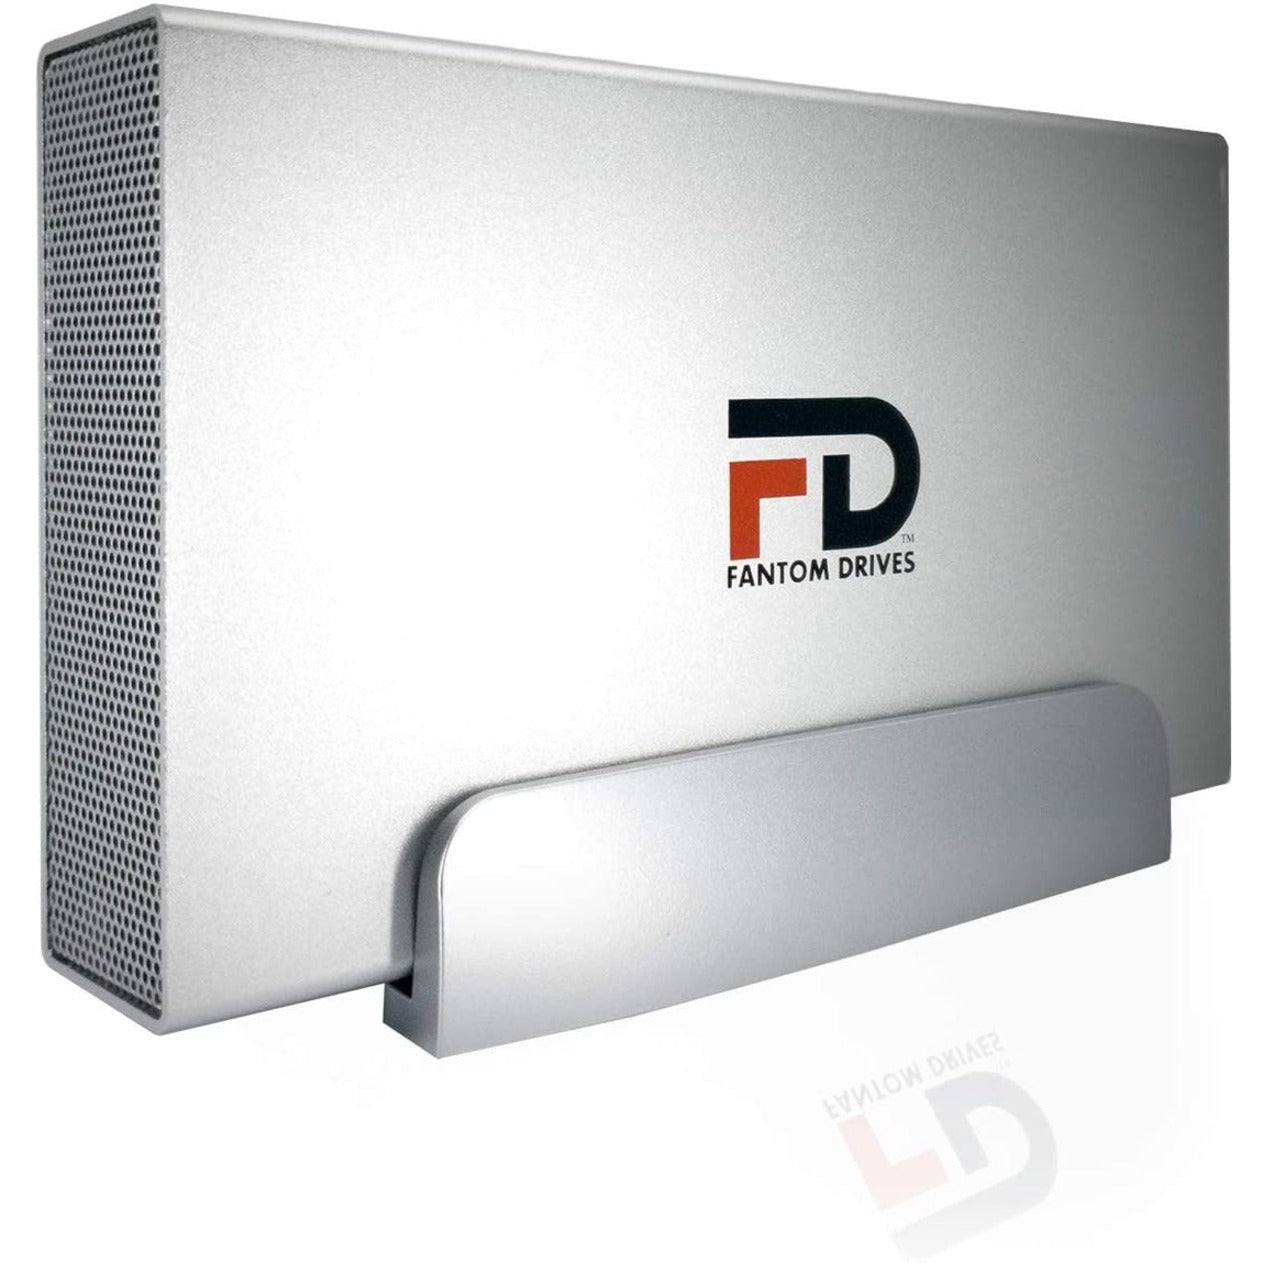 Fantom Drives GFSP4000EU3 GFORCE 4TB 7200RPM External Hard Drive - USB 3.2 Gen 1 & eSATA - Silver, High-Speed Data Storage Solution